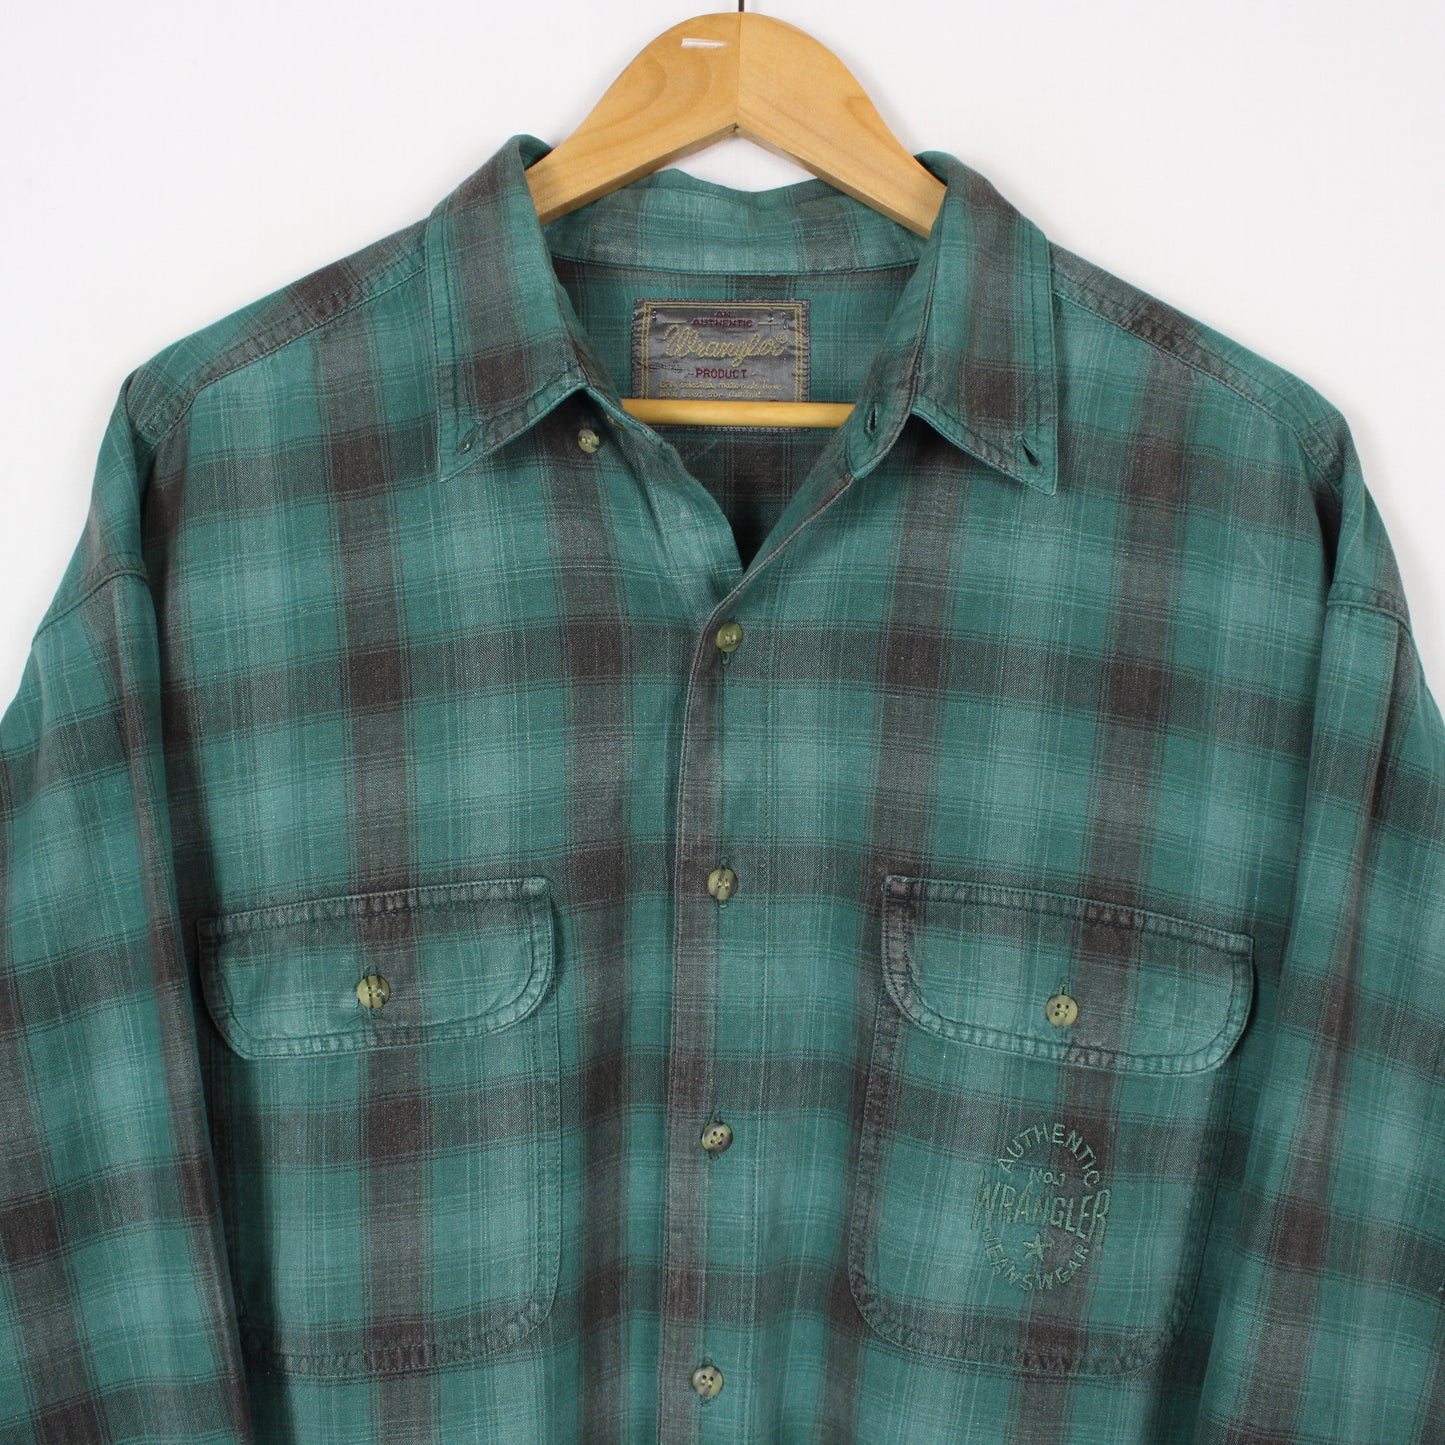 Vintage Wrangler Button Up Shirt - XL